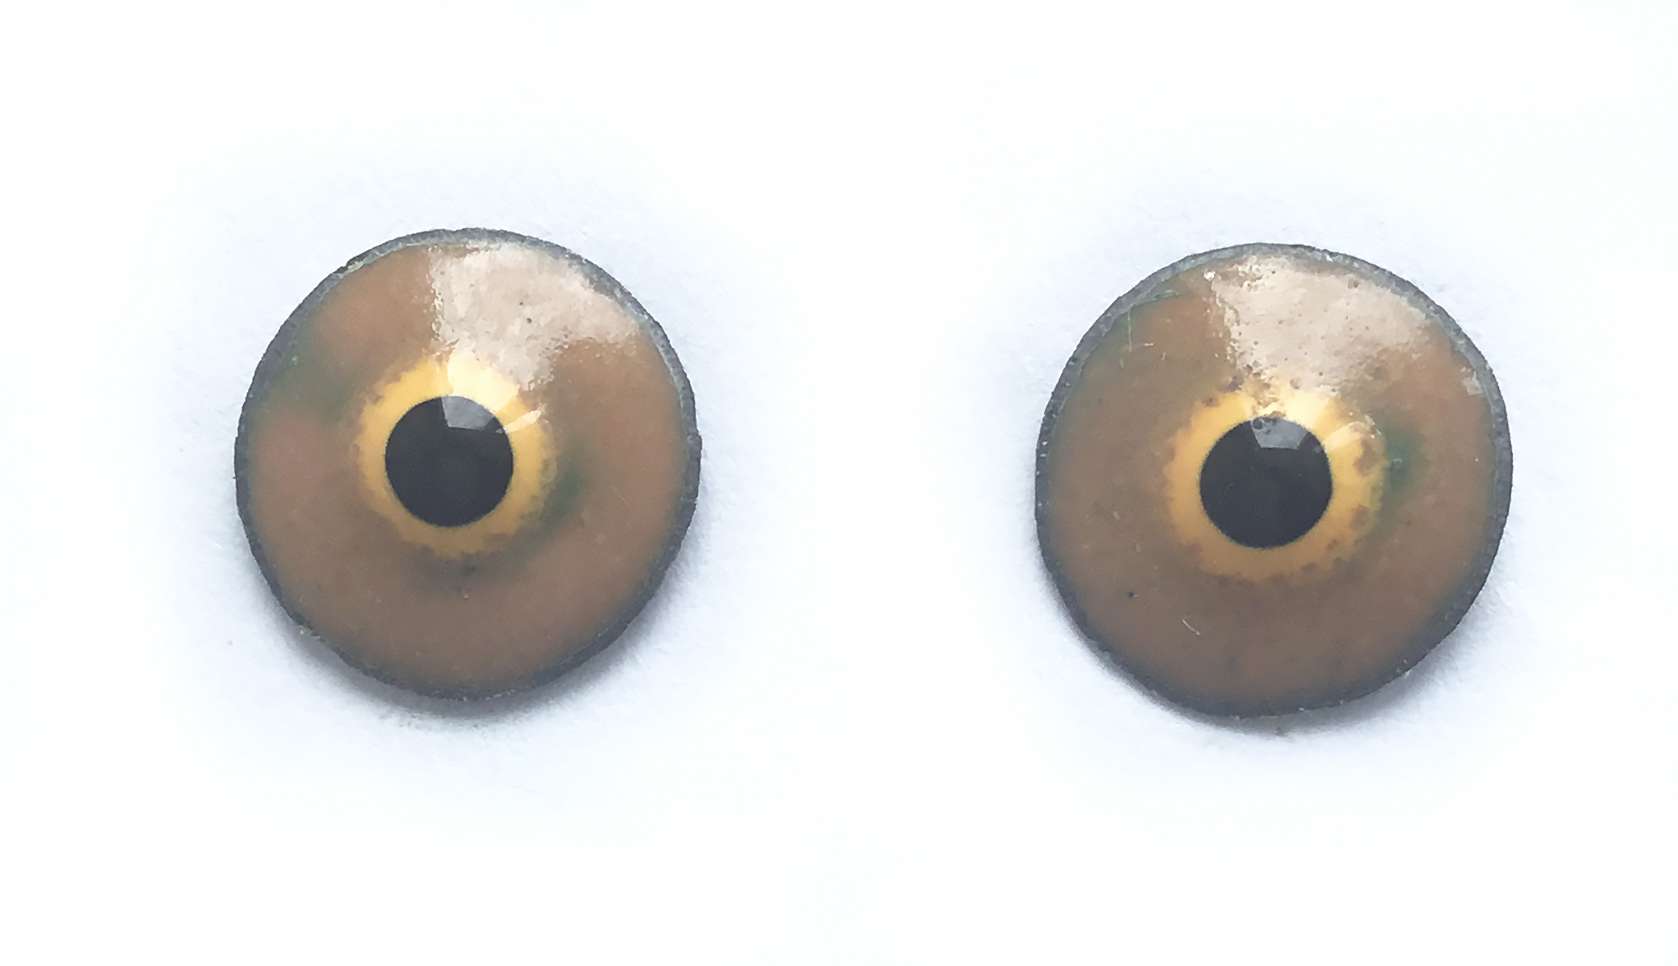 Глаза-пуговки эмалевые. 11 мм.470 руб.